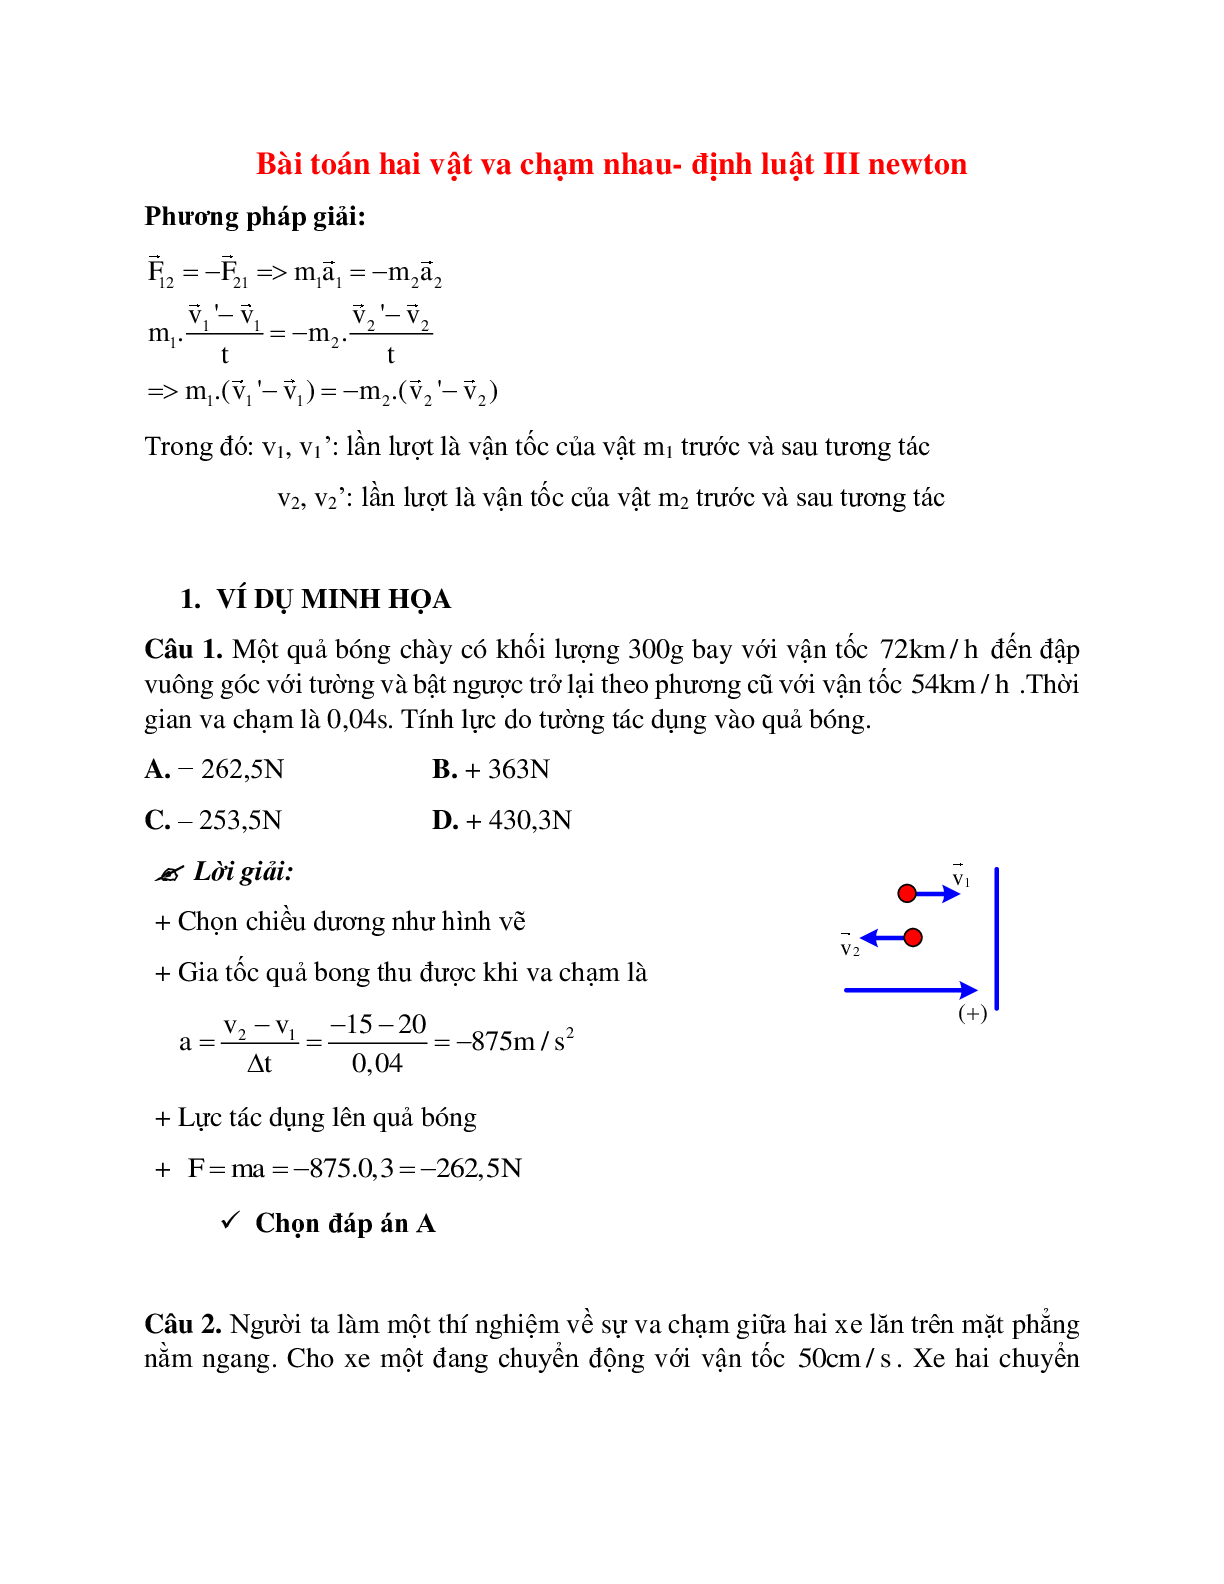 Phương pháp giải và bài tập về Bài toán hai vật va chạm nhau - định luật III Newton chọn lọc (trang 1)